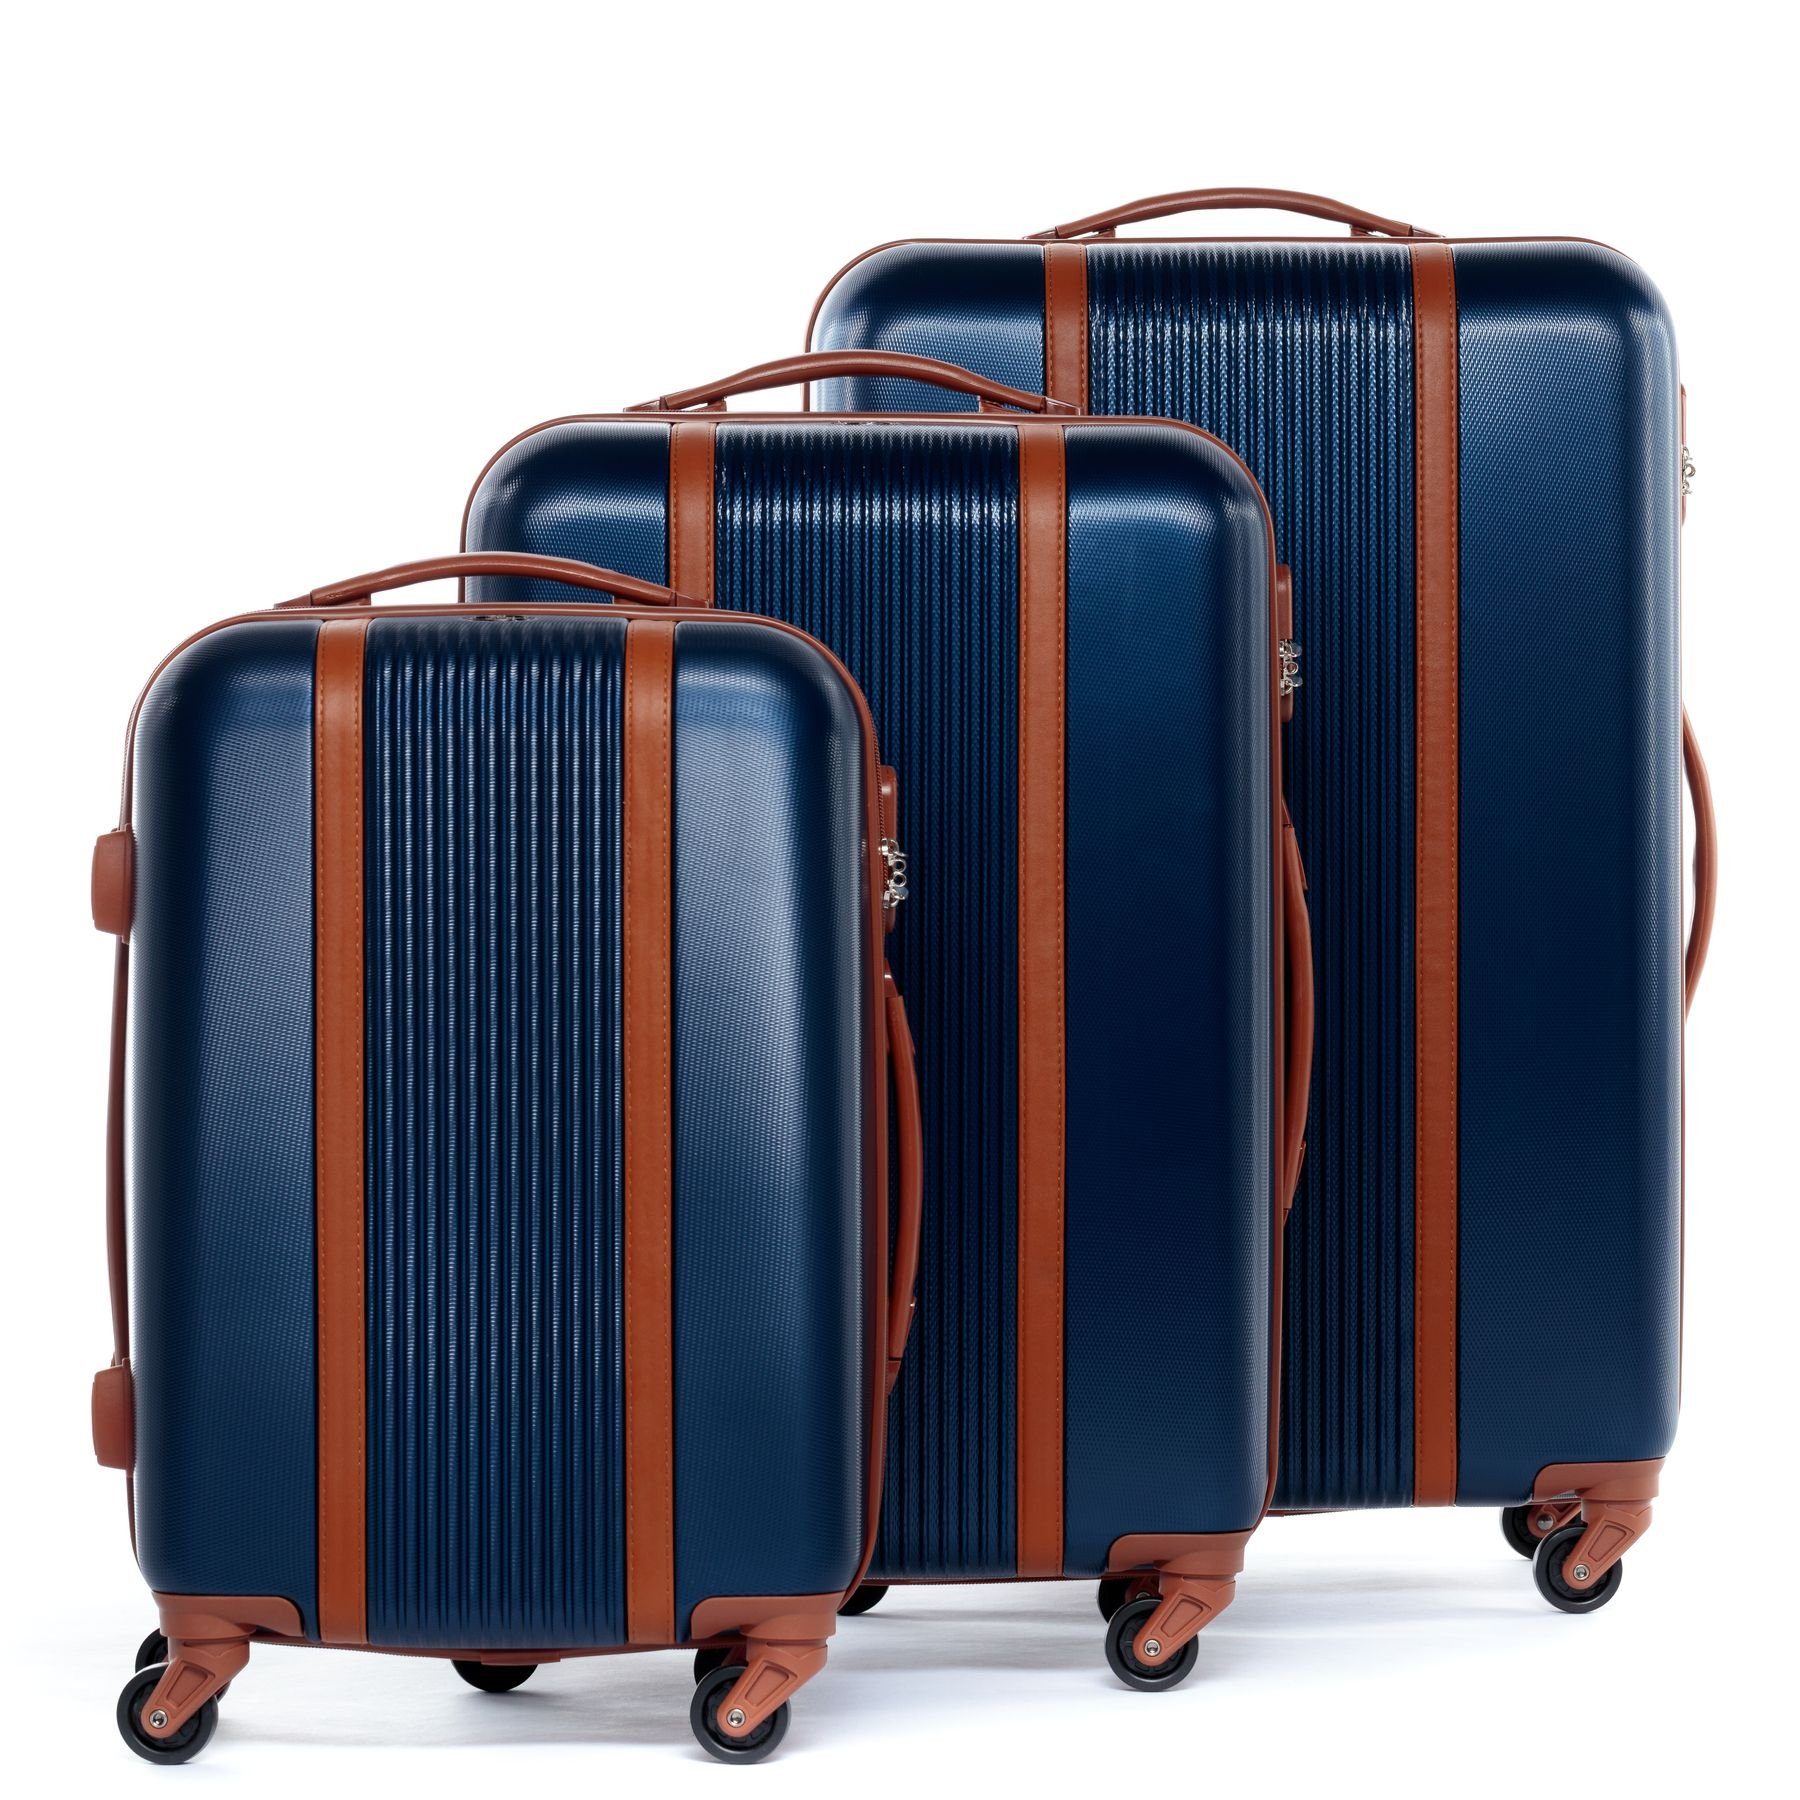 FERGÉ Kofferset 3 teilig Hartschale Milano, Trolley 3er Koffer Set, Reisekoffer 4 Rollen, Premium Rollkoffer blau-braun